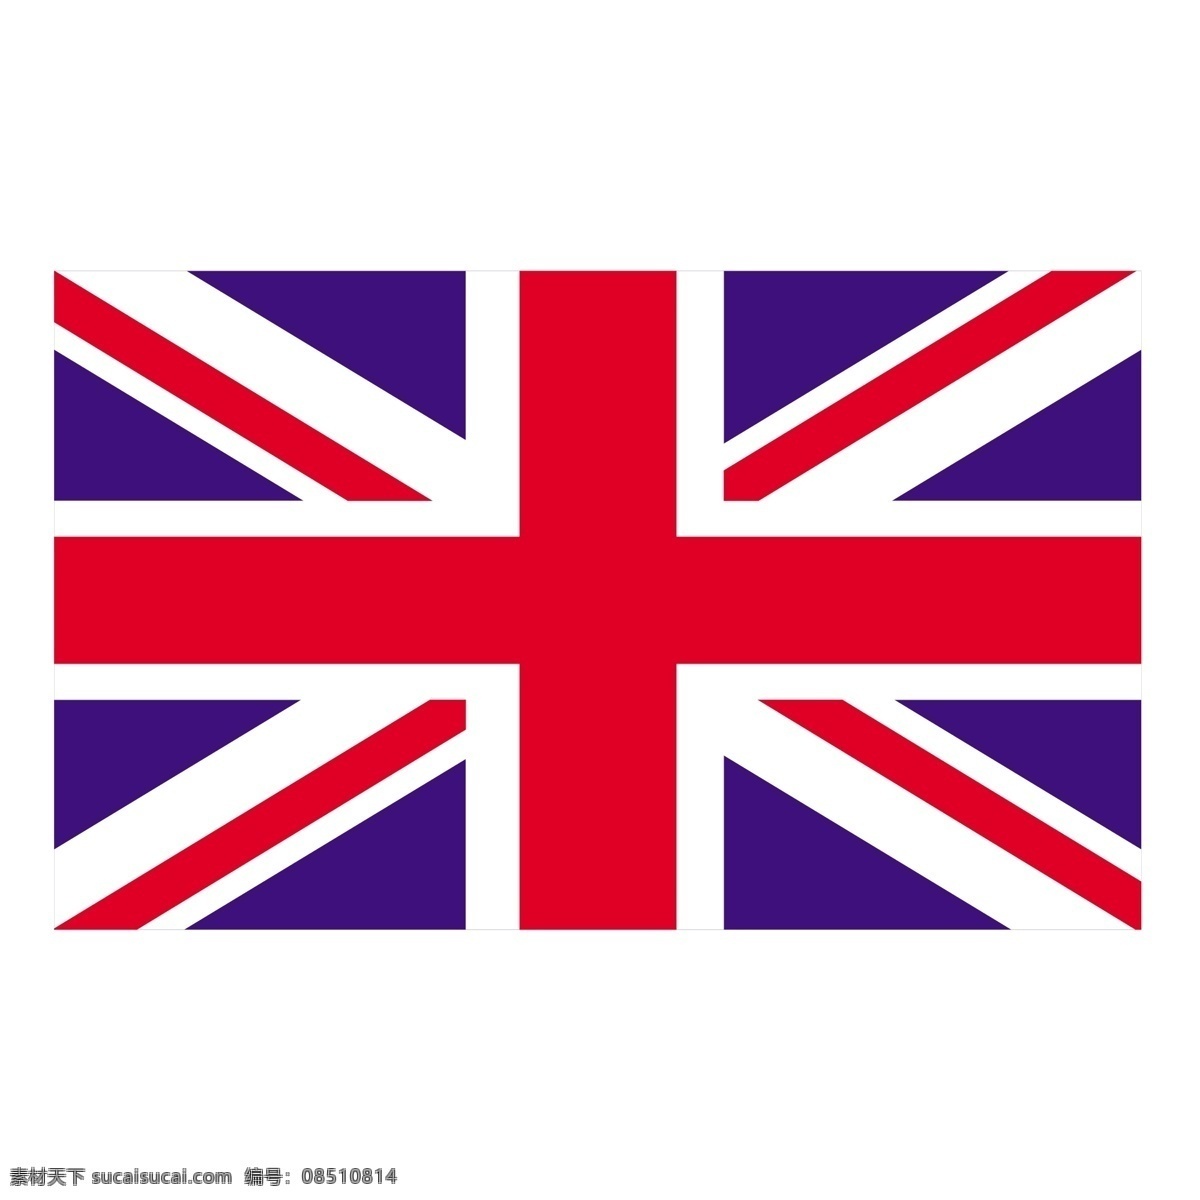 英国0 美国 英国 自由 矢量 地图 轮廓 联合王国 国旗 剪贴 画 向量 英国向量 矢量图 建筑家居